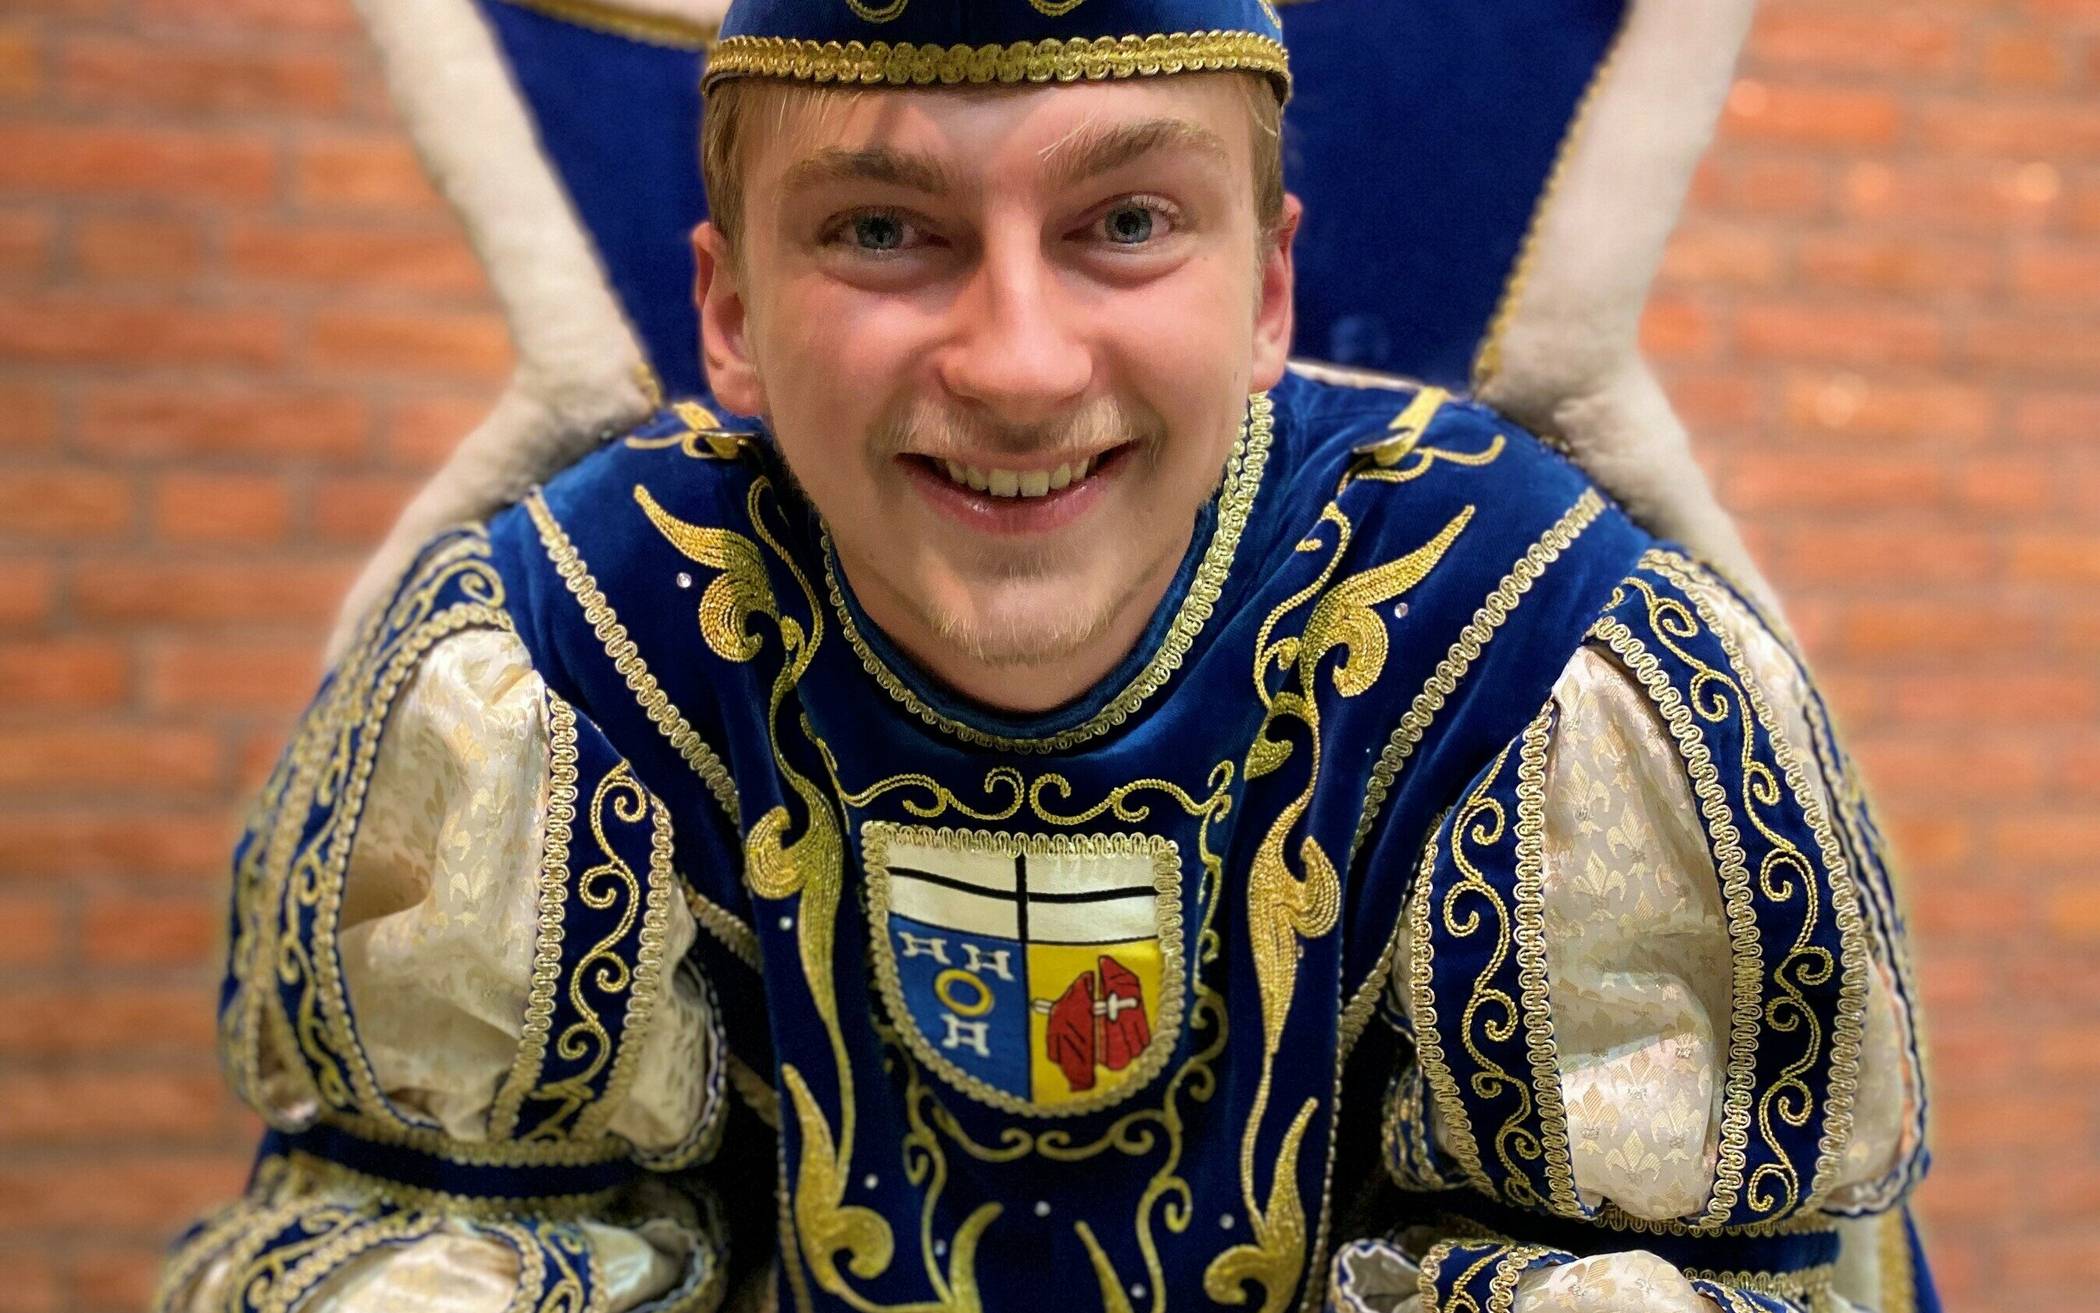  Raphael Leßmann ist der jüngste Karnevalsprinz in der Kaarster Stadtgeschichte. 